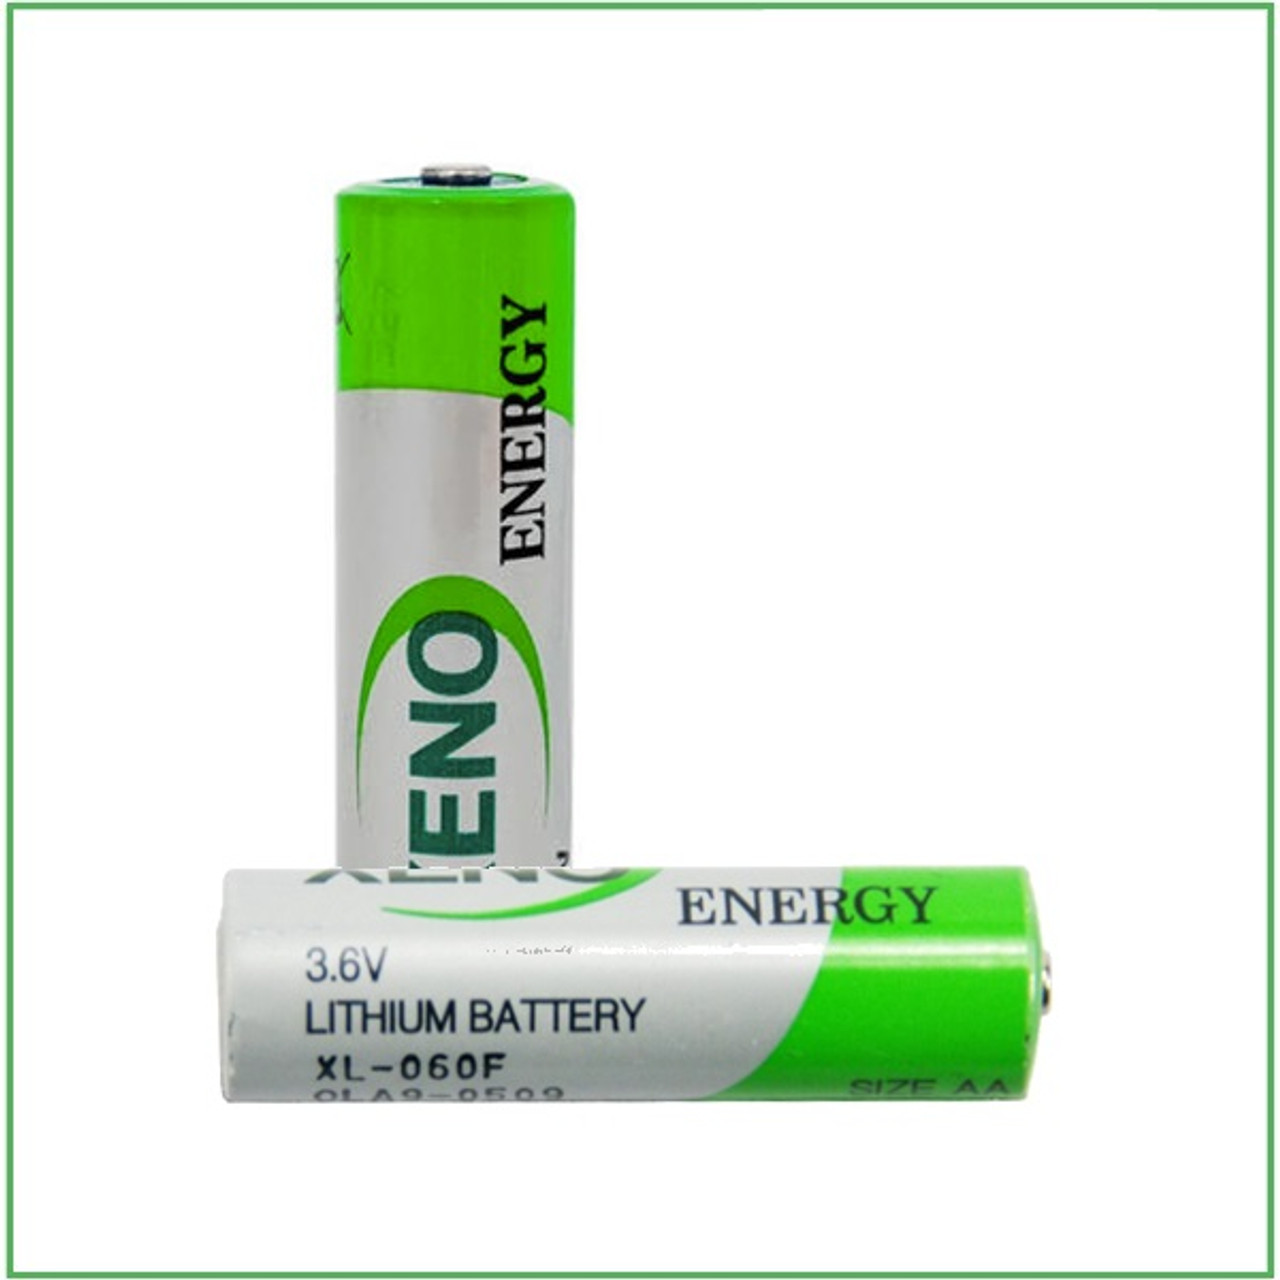 XL-060F - Xeno Energy AA 3.6V Lithium Battery